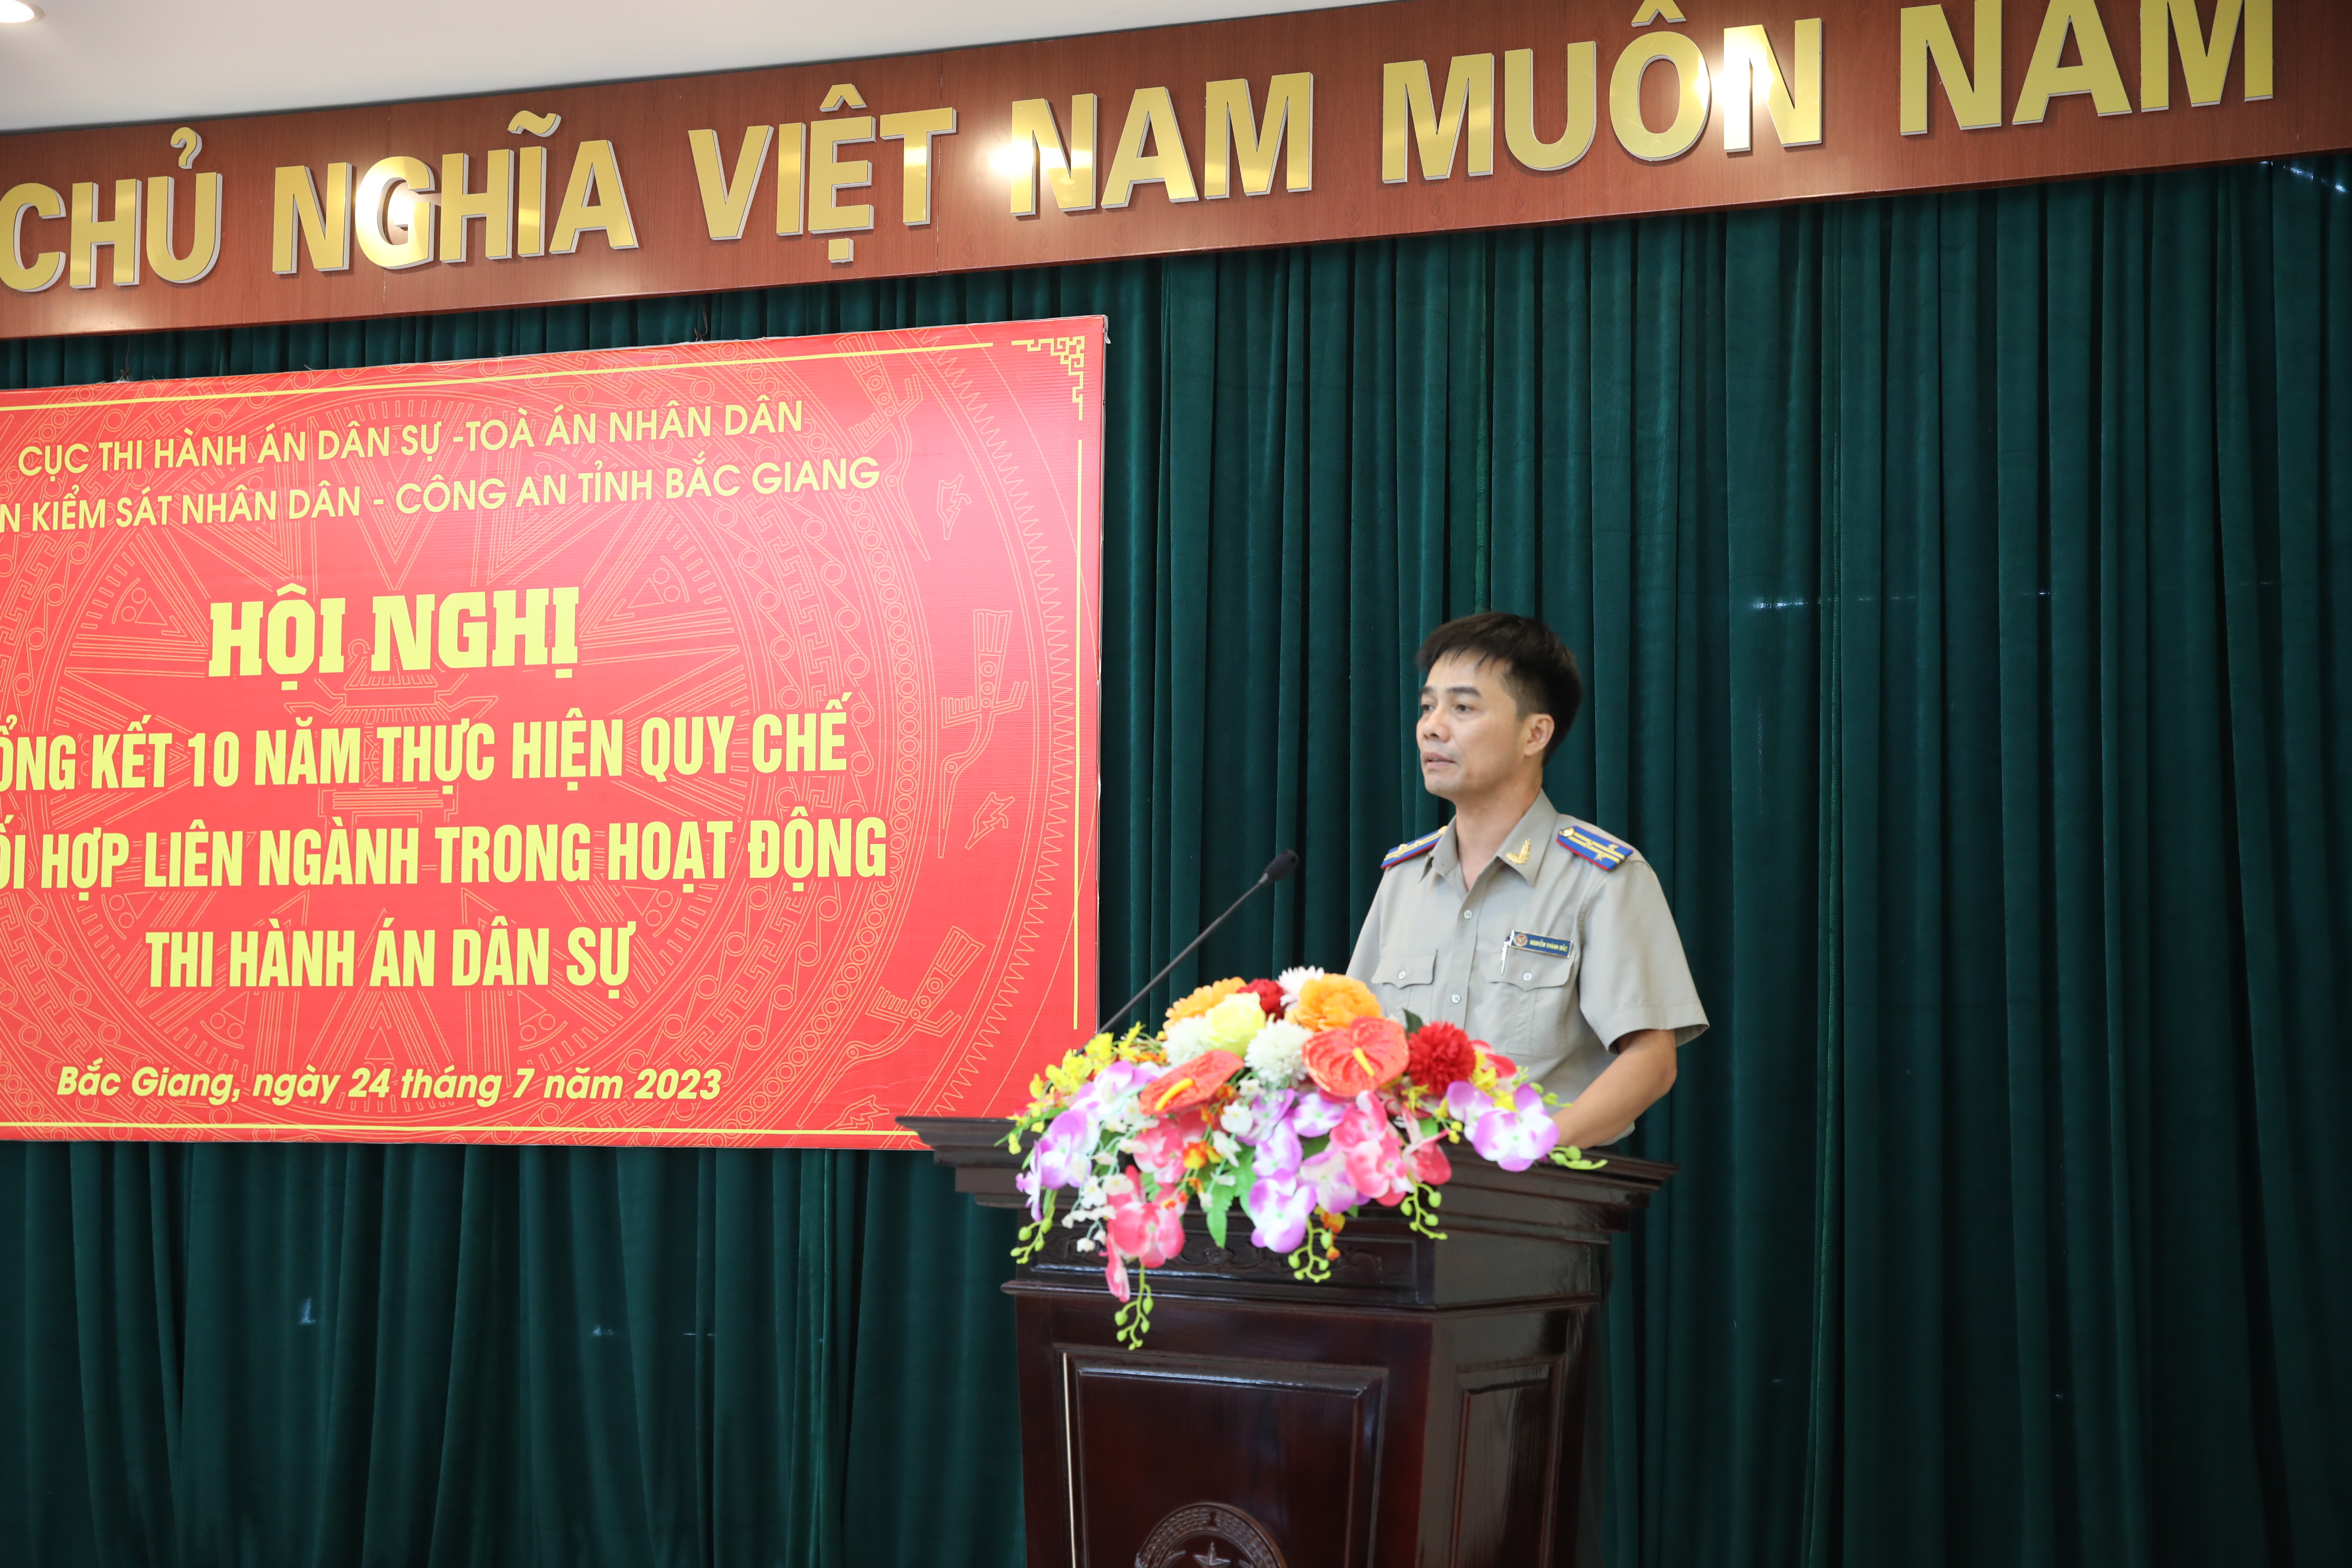 Hội nghị tổng kết 10 năm thực hiện Quy chế phối hợp liên ngành trong hoạt động thi hành án dân sự trên địa bàn tỉnh Bắc Giang